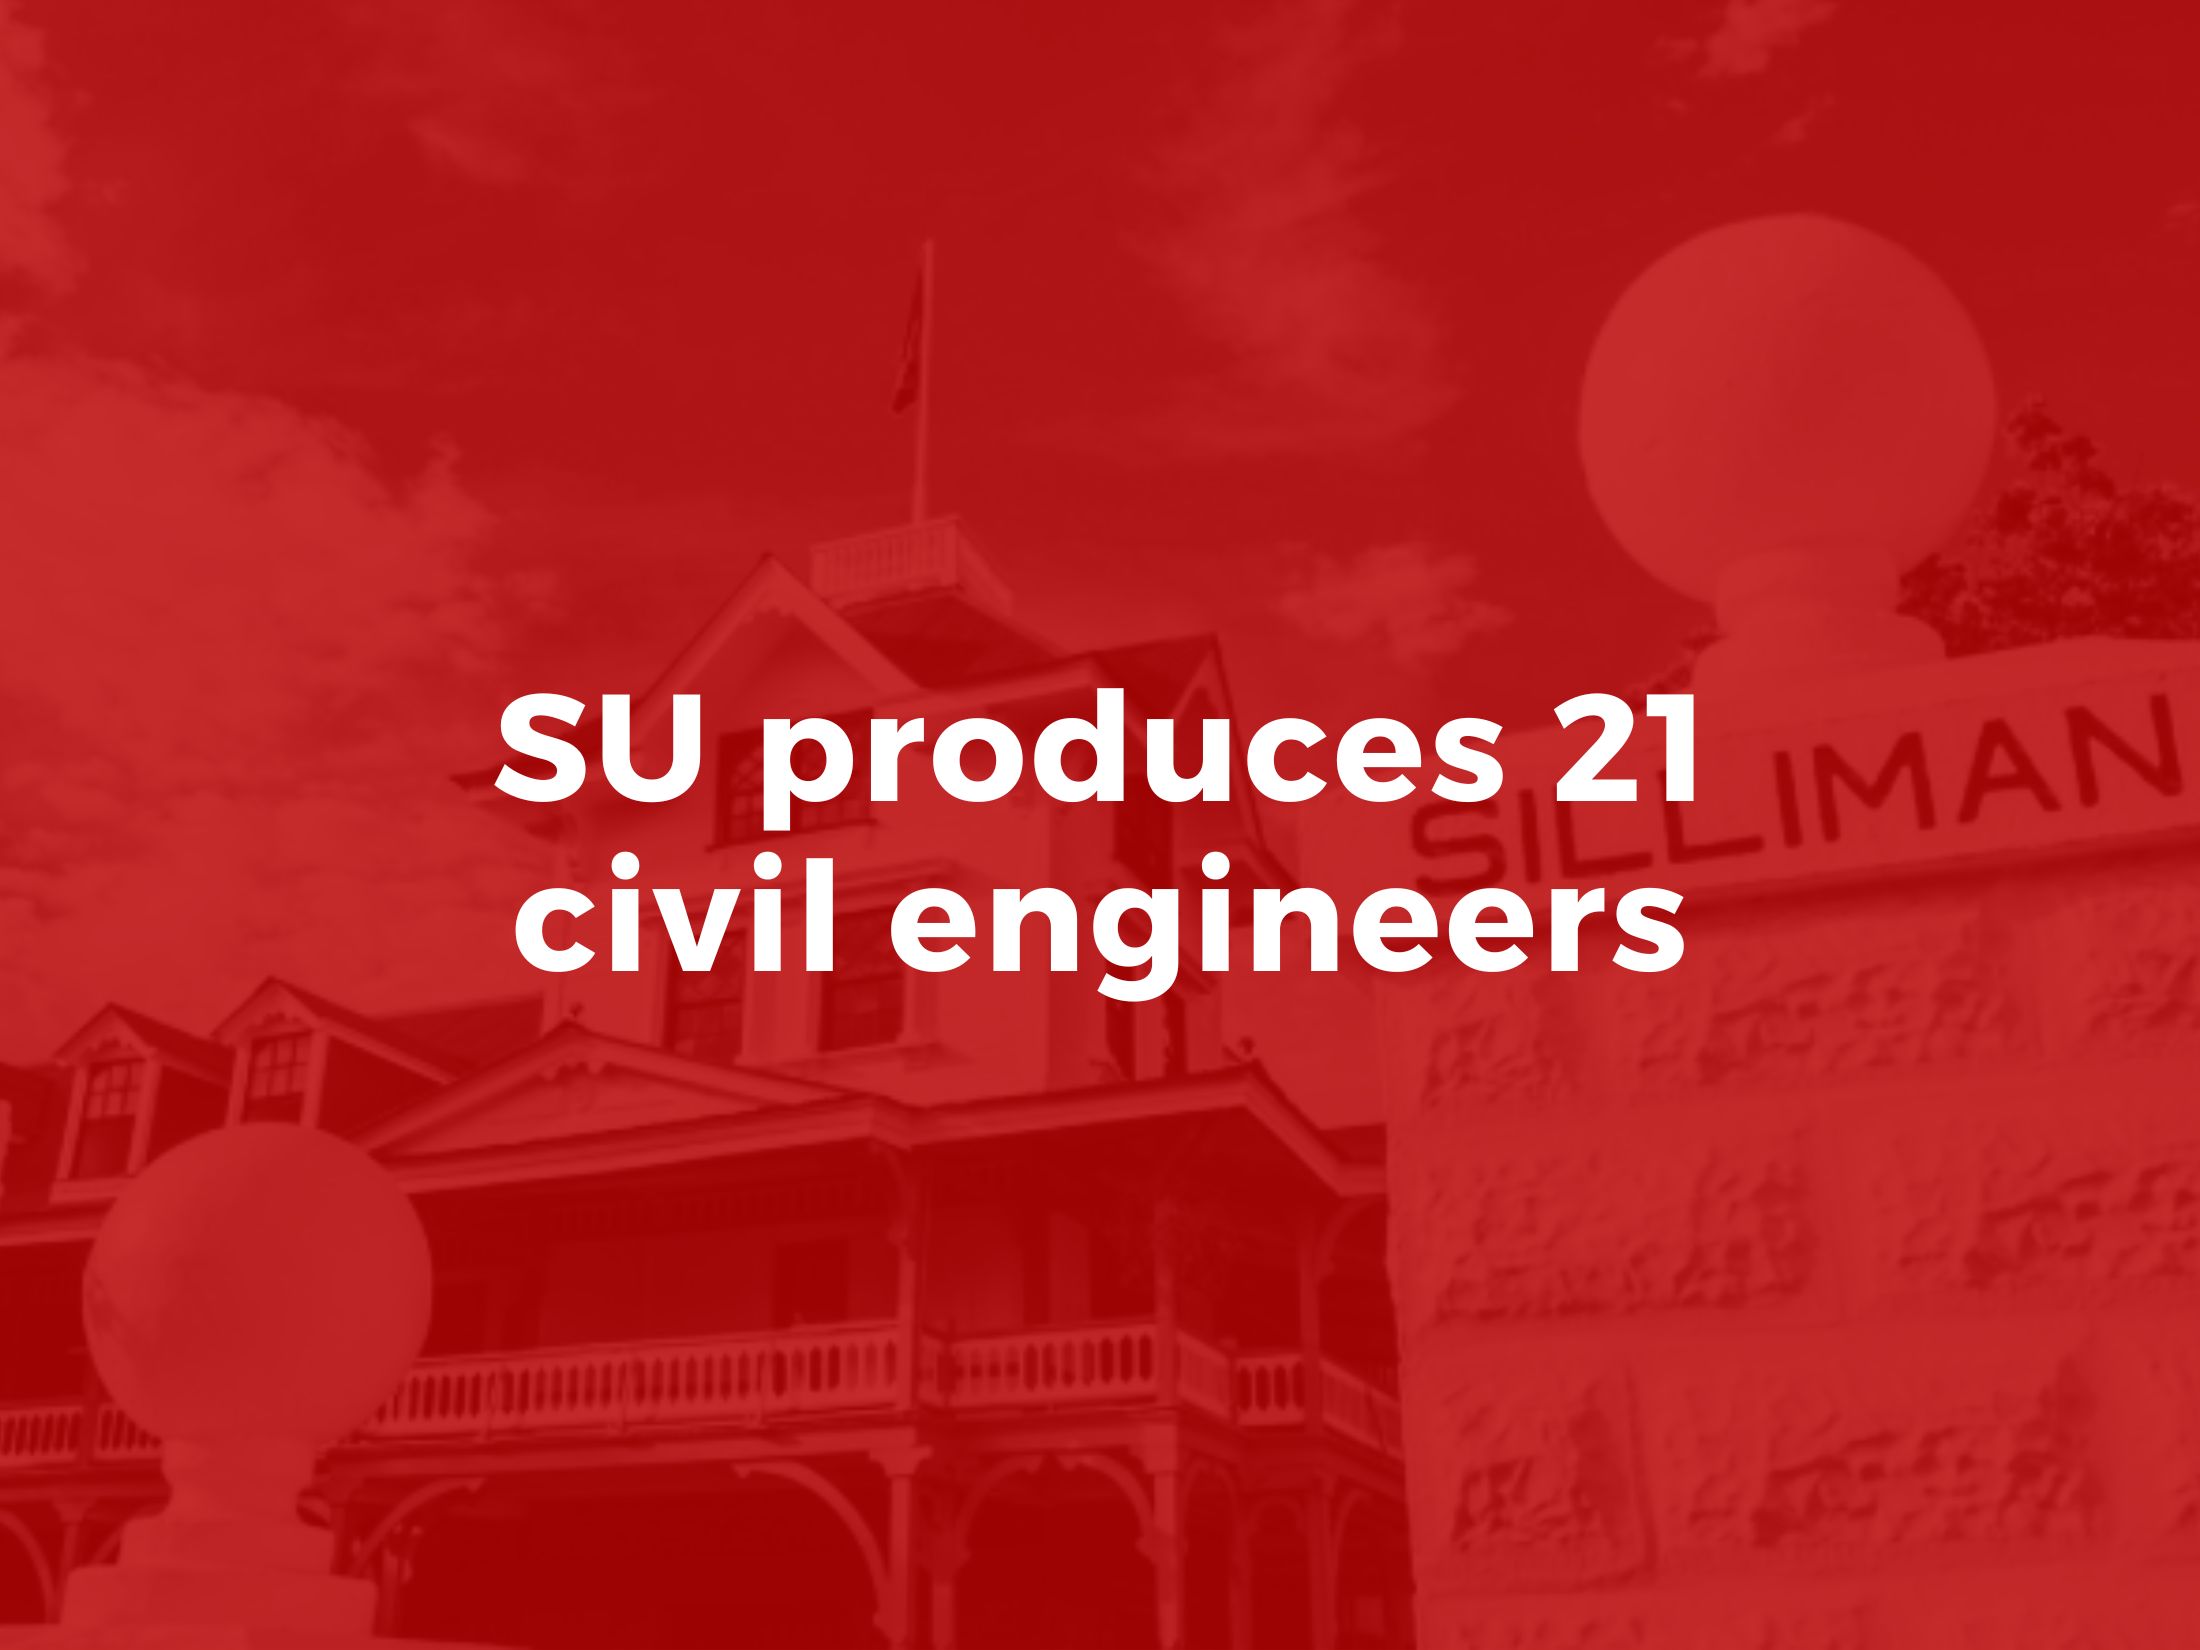 SU produces 21 civil engineers